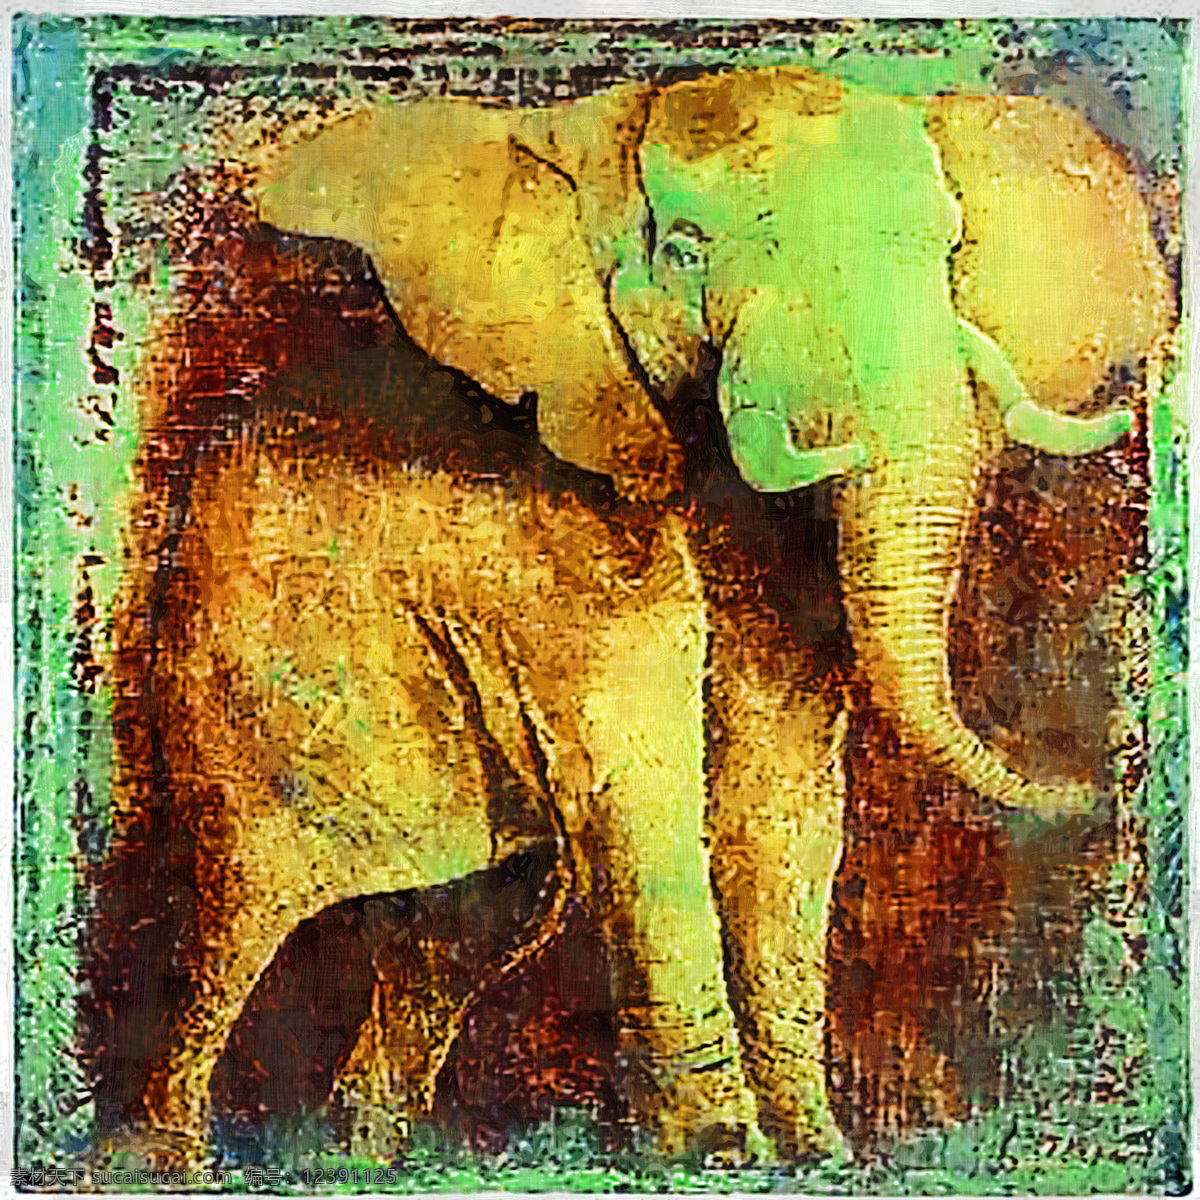 大象 动物 复古 怀旧 绘画书法 文化艺术 无框画 大象设计素材 大象模板下载 油画 装饰画 野生动物 装饰素材